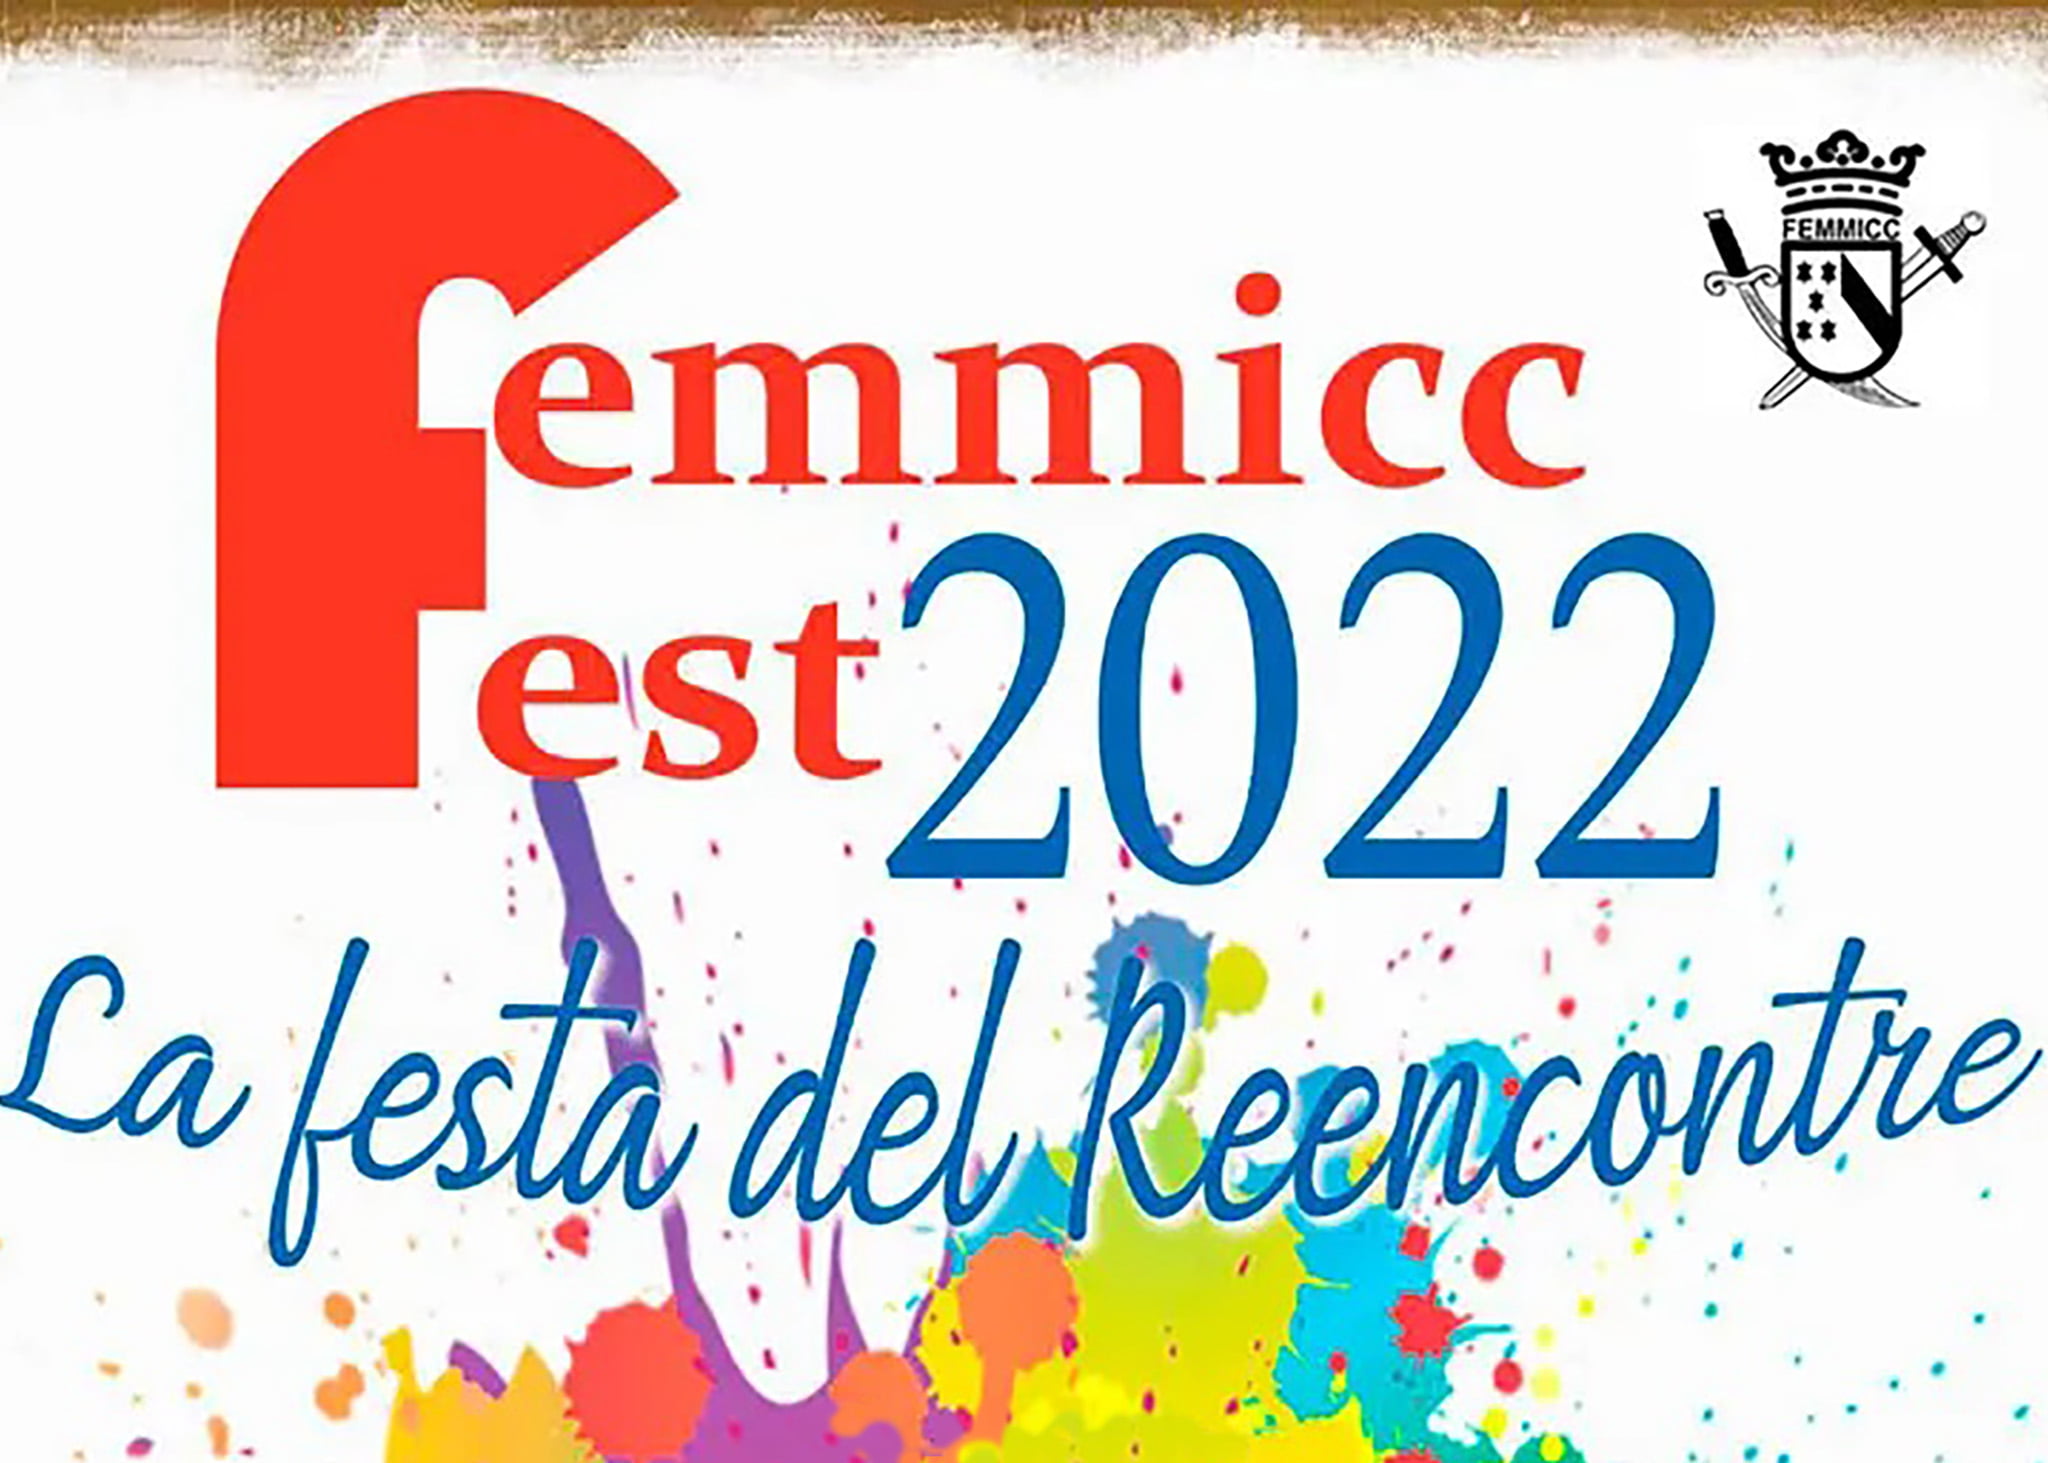 FEMMICC Fest 2022